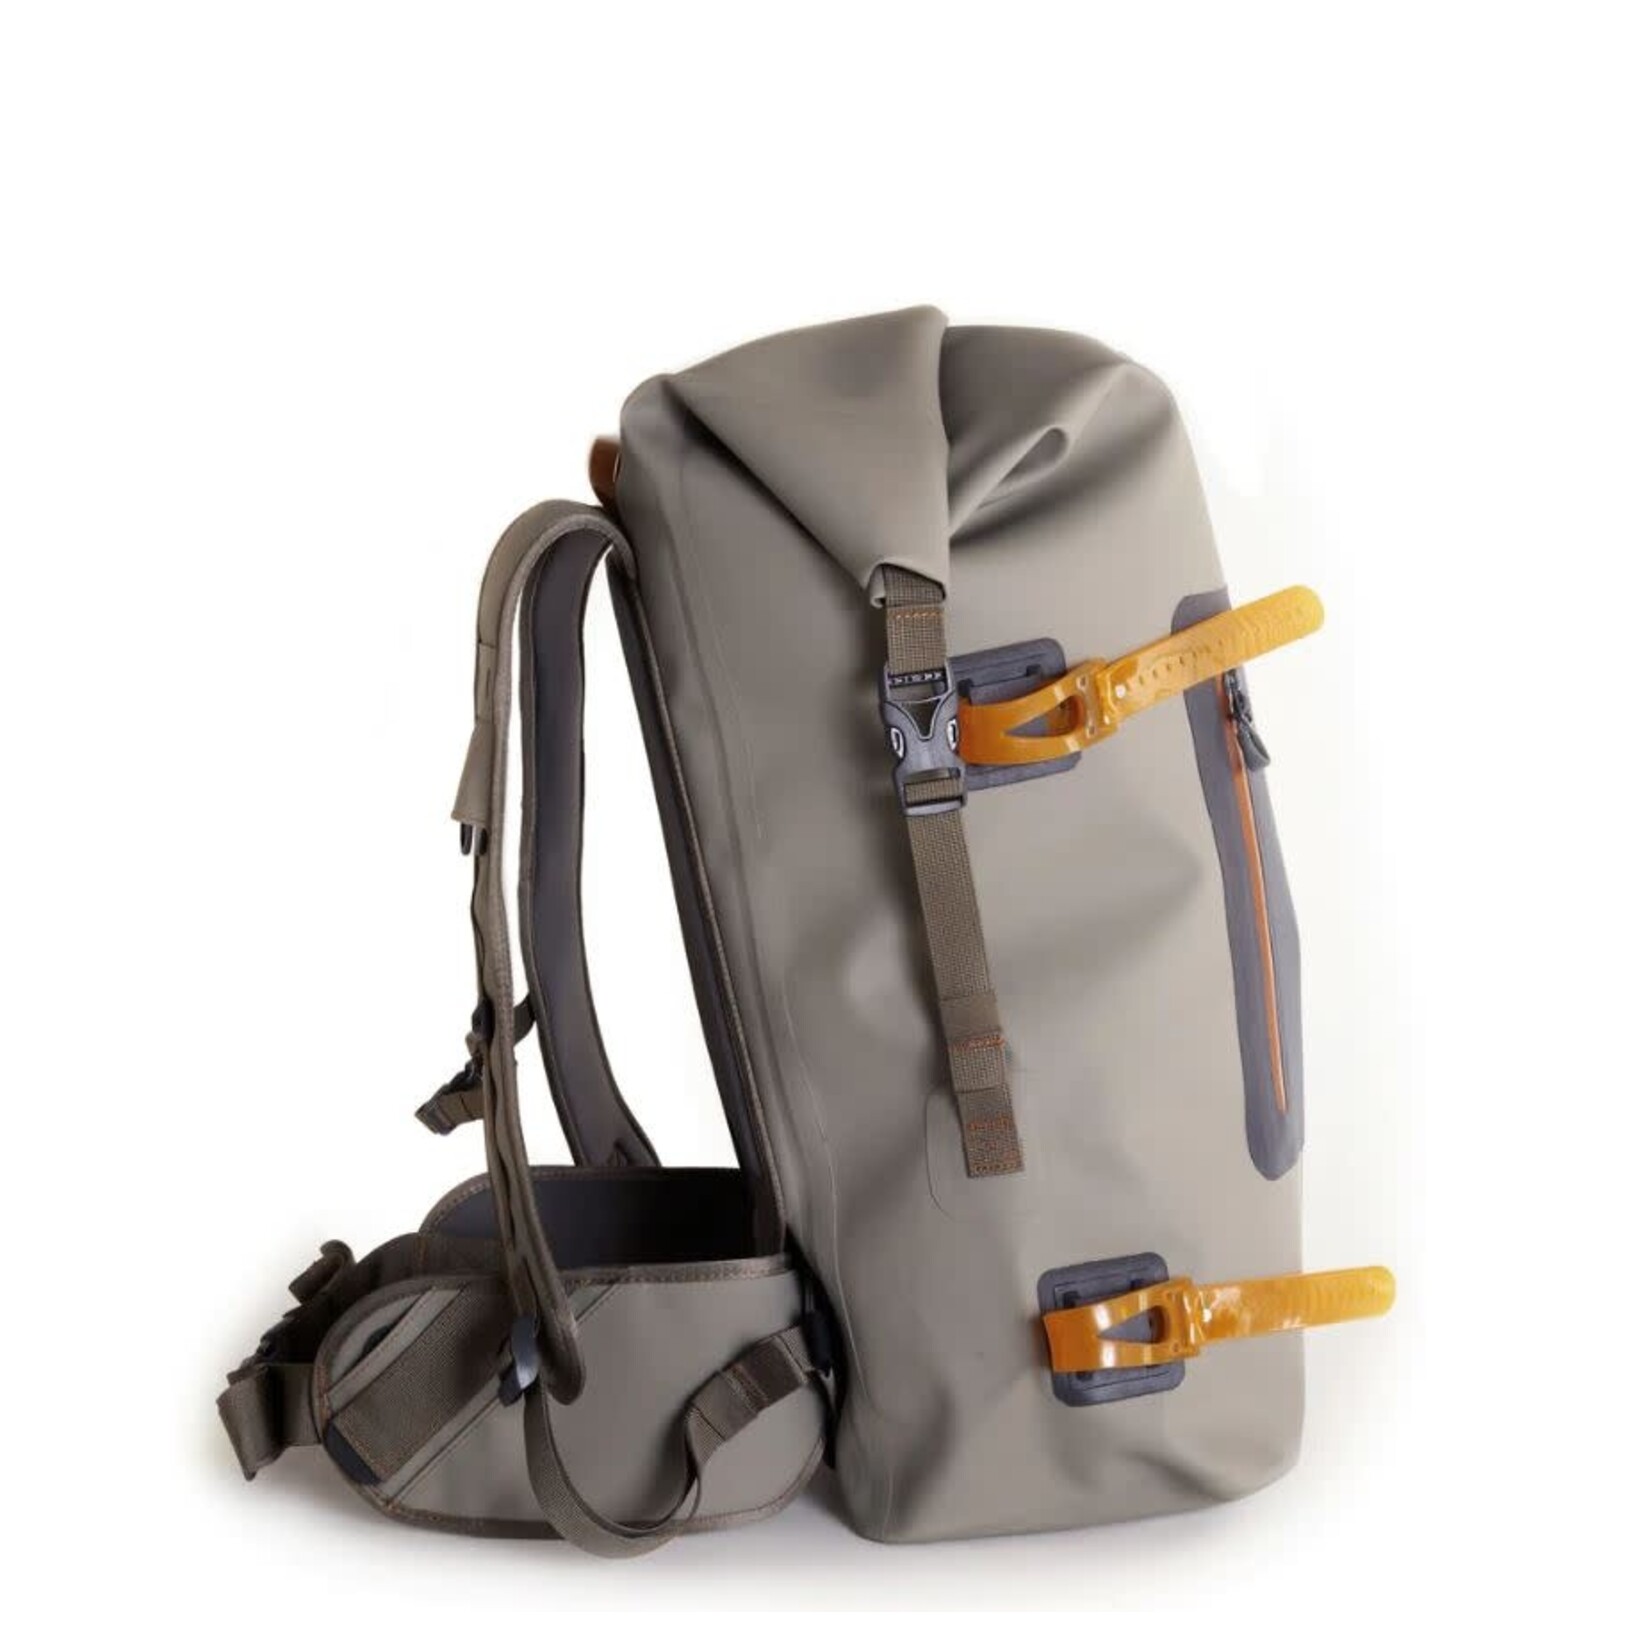 FISHPOND Fishpond Wind River Roll-Top Backpack